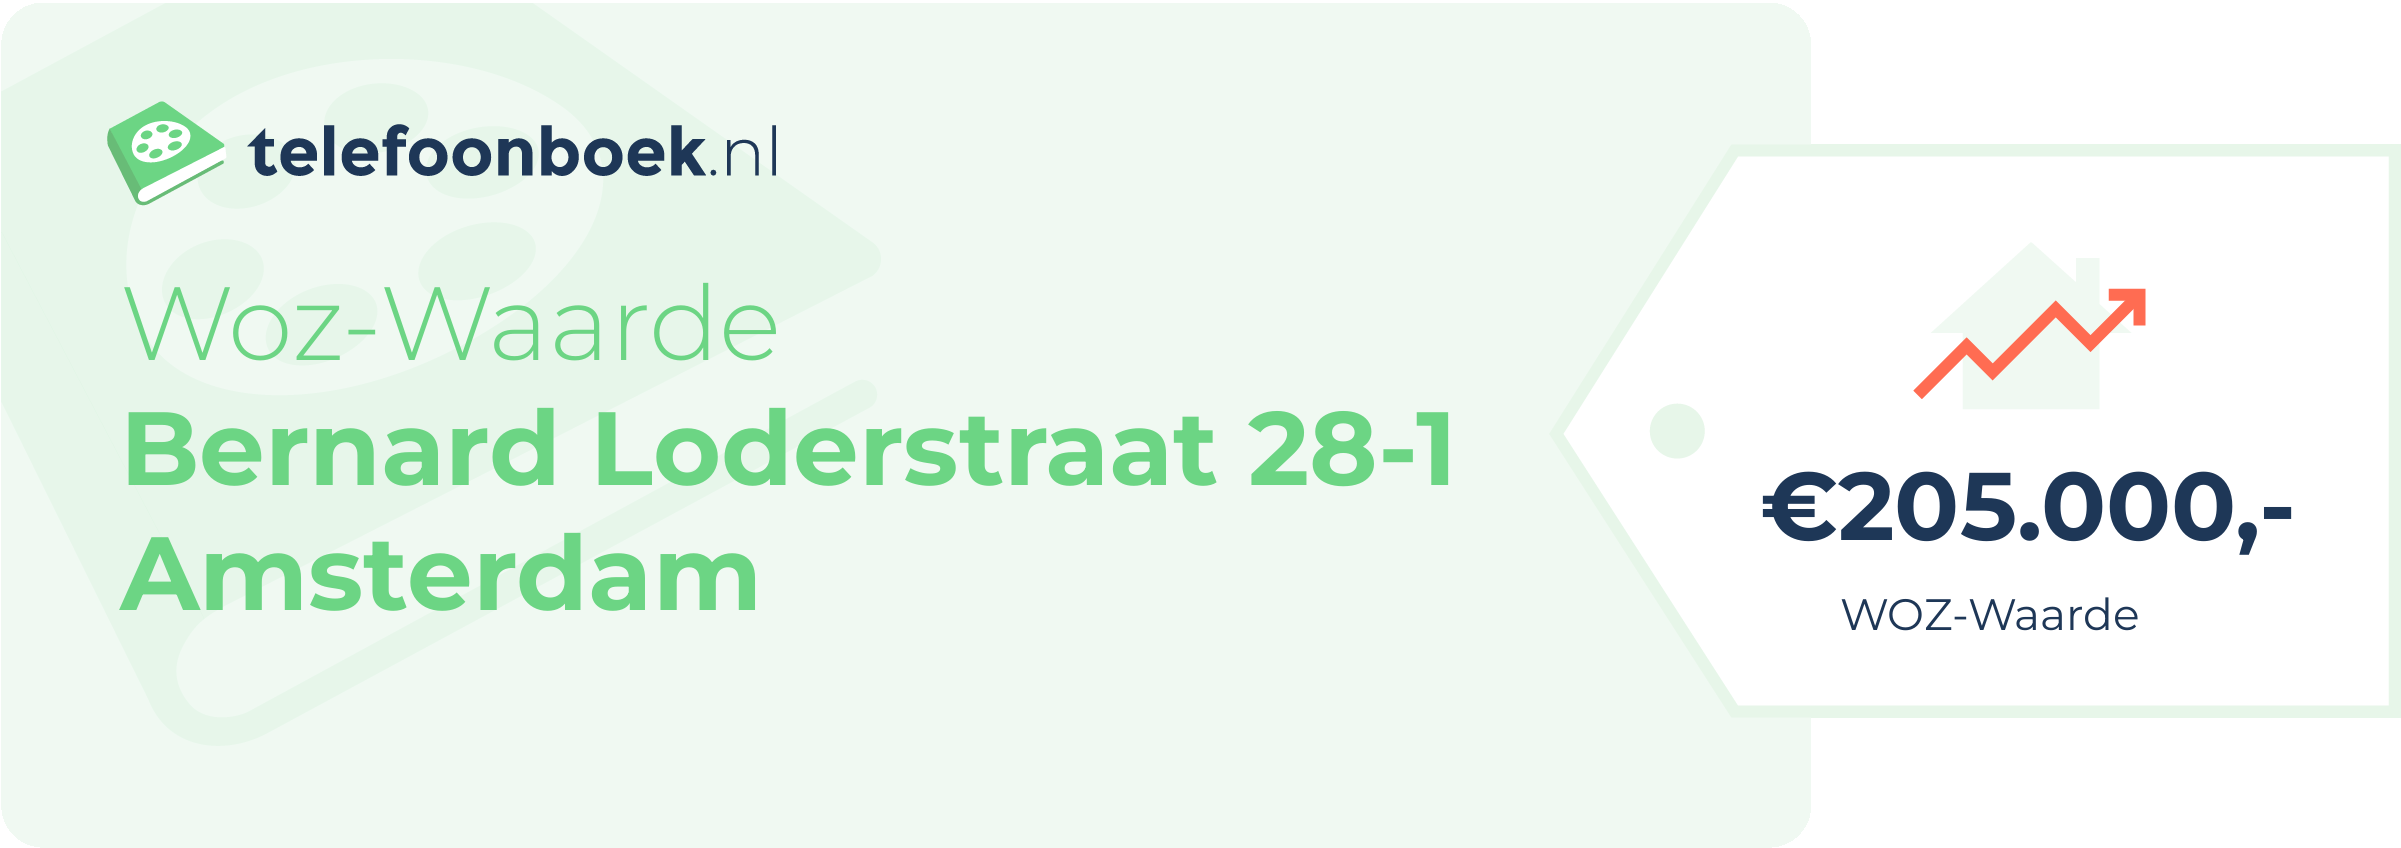 WOZ-waarde Bernard Loderstraat 28-1 Amsterdam